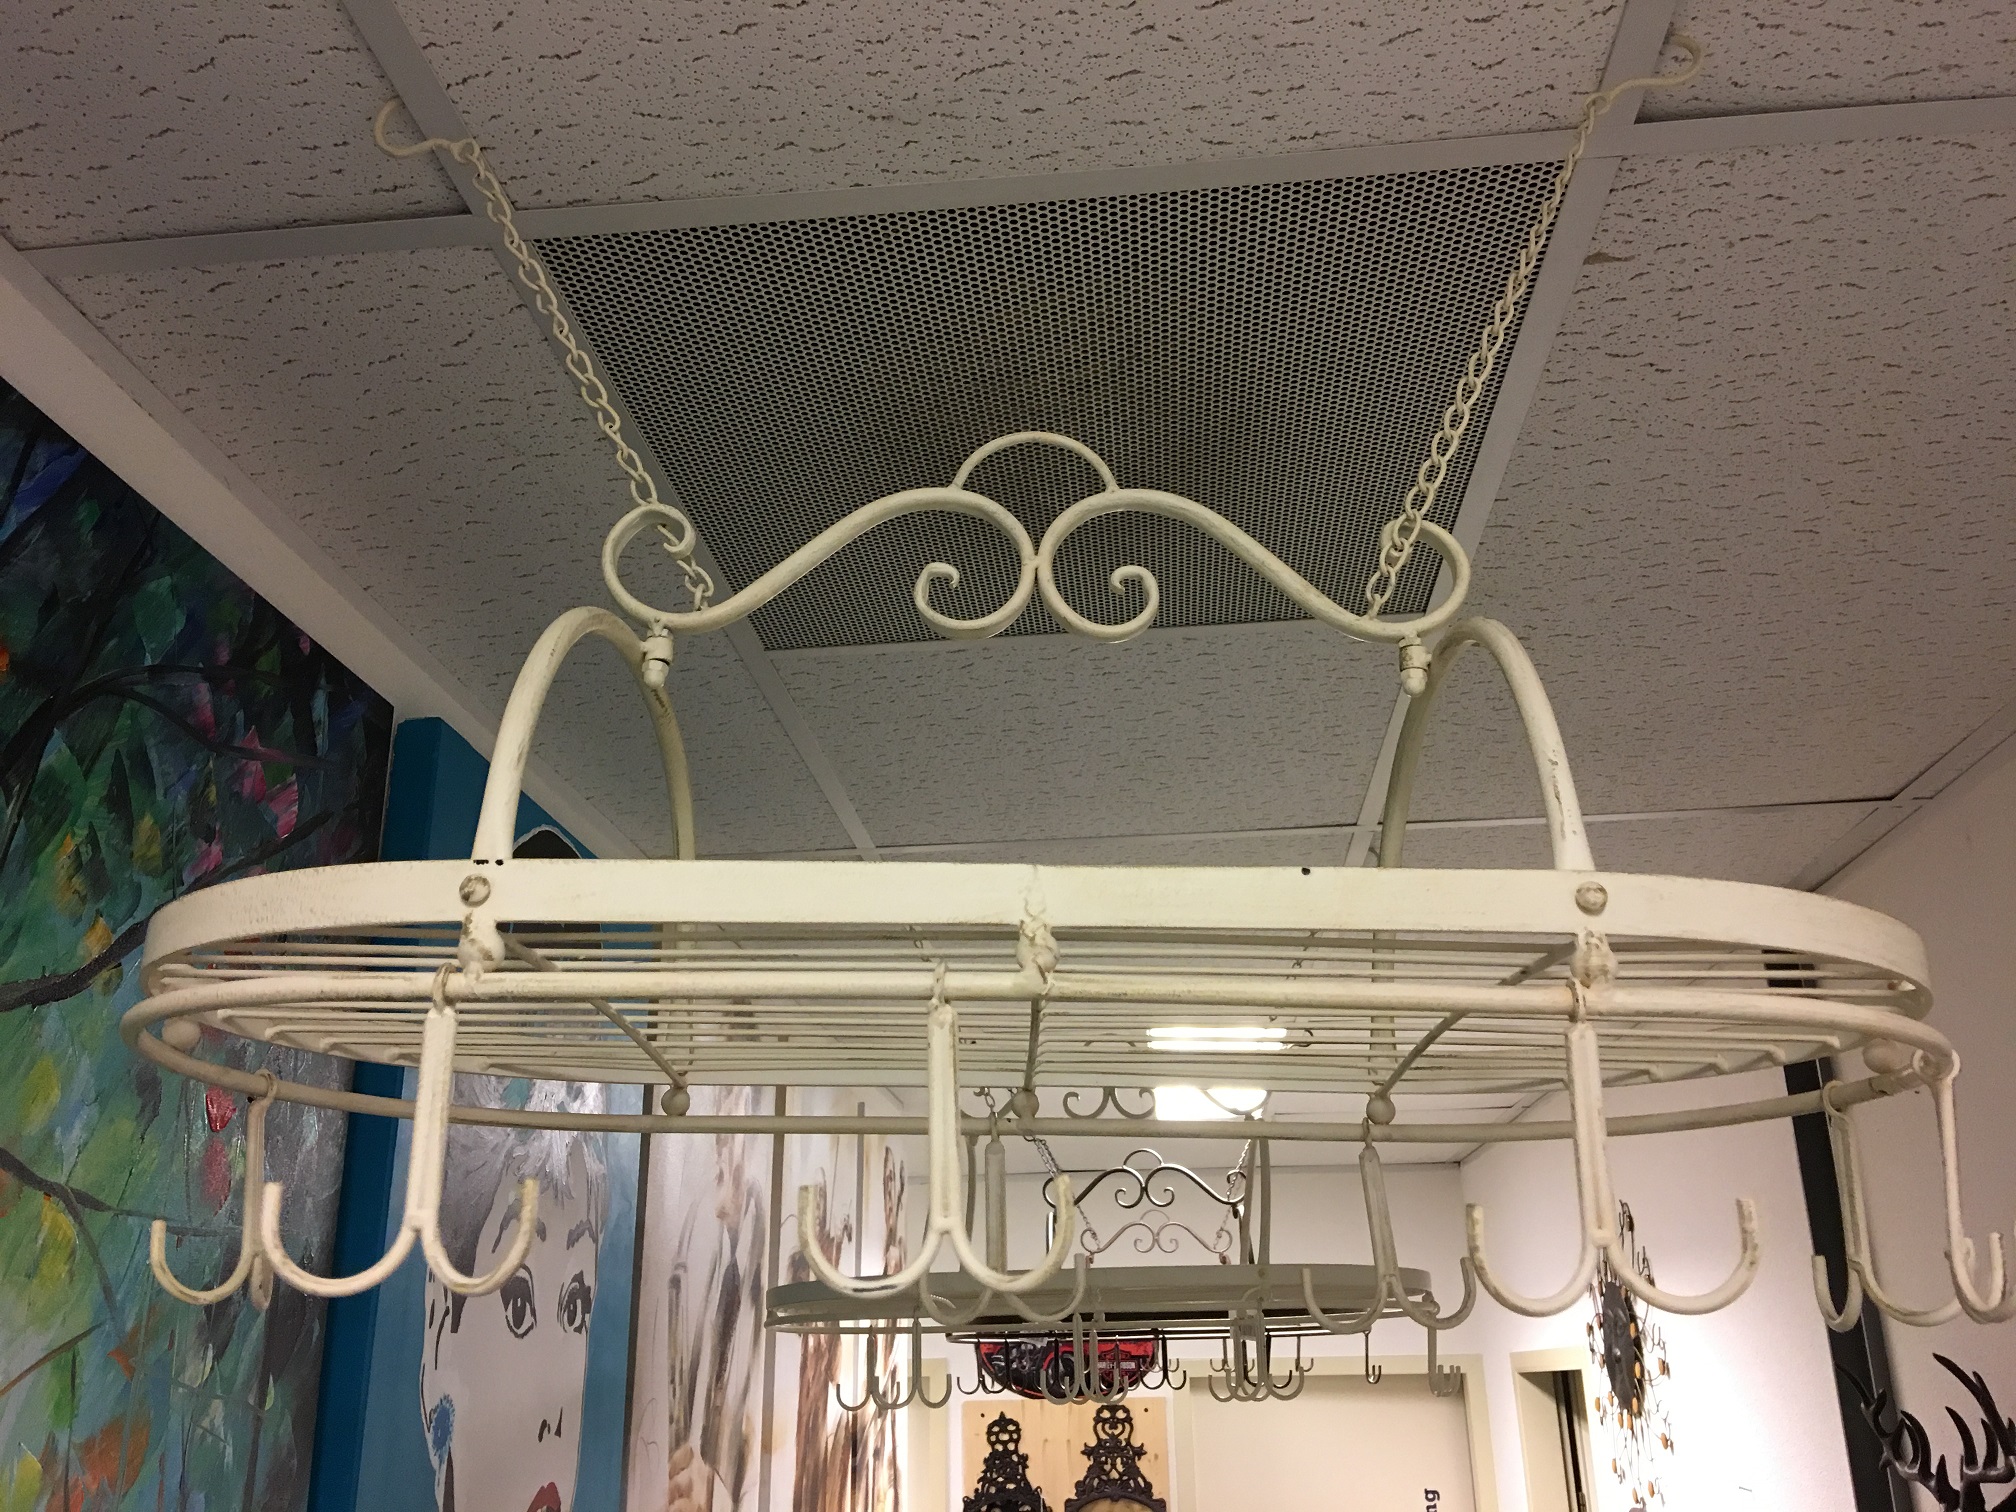 Cup Hanger - Gewürzregal aus Eisen mit 8 Doppelhaken, weiß